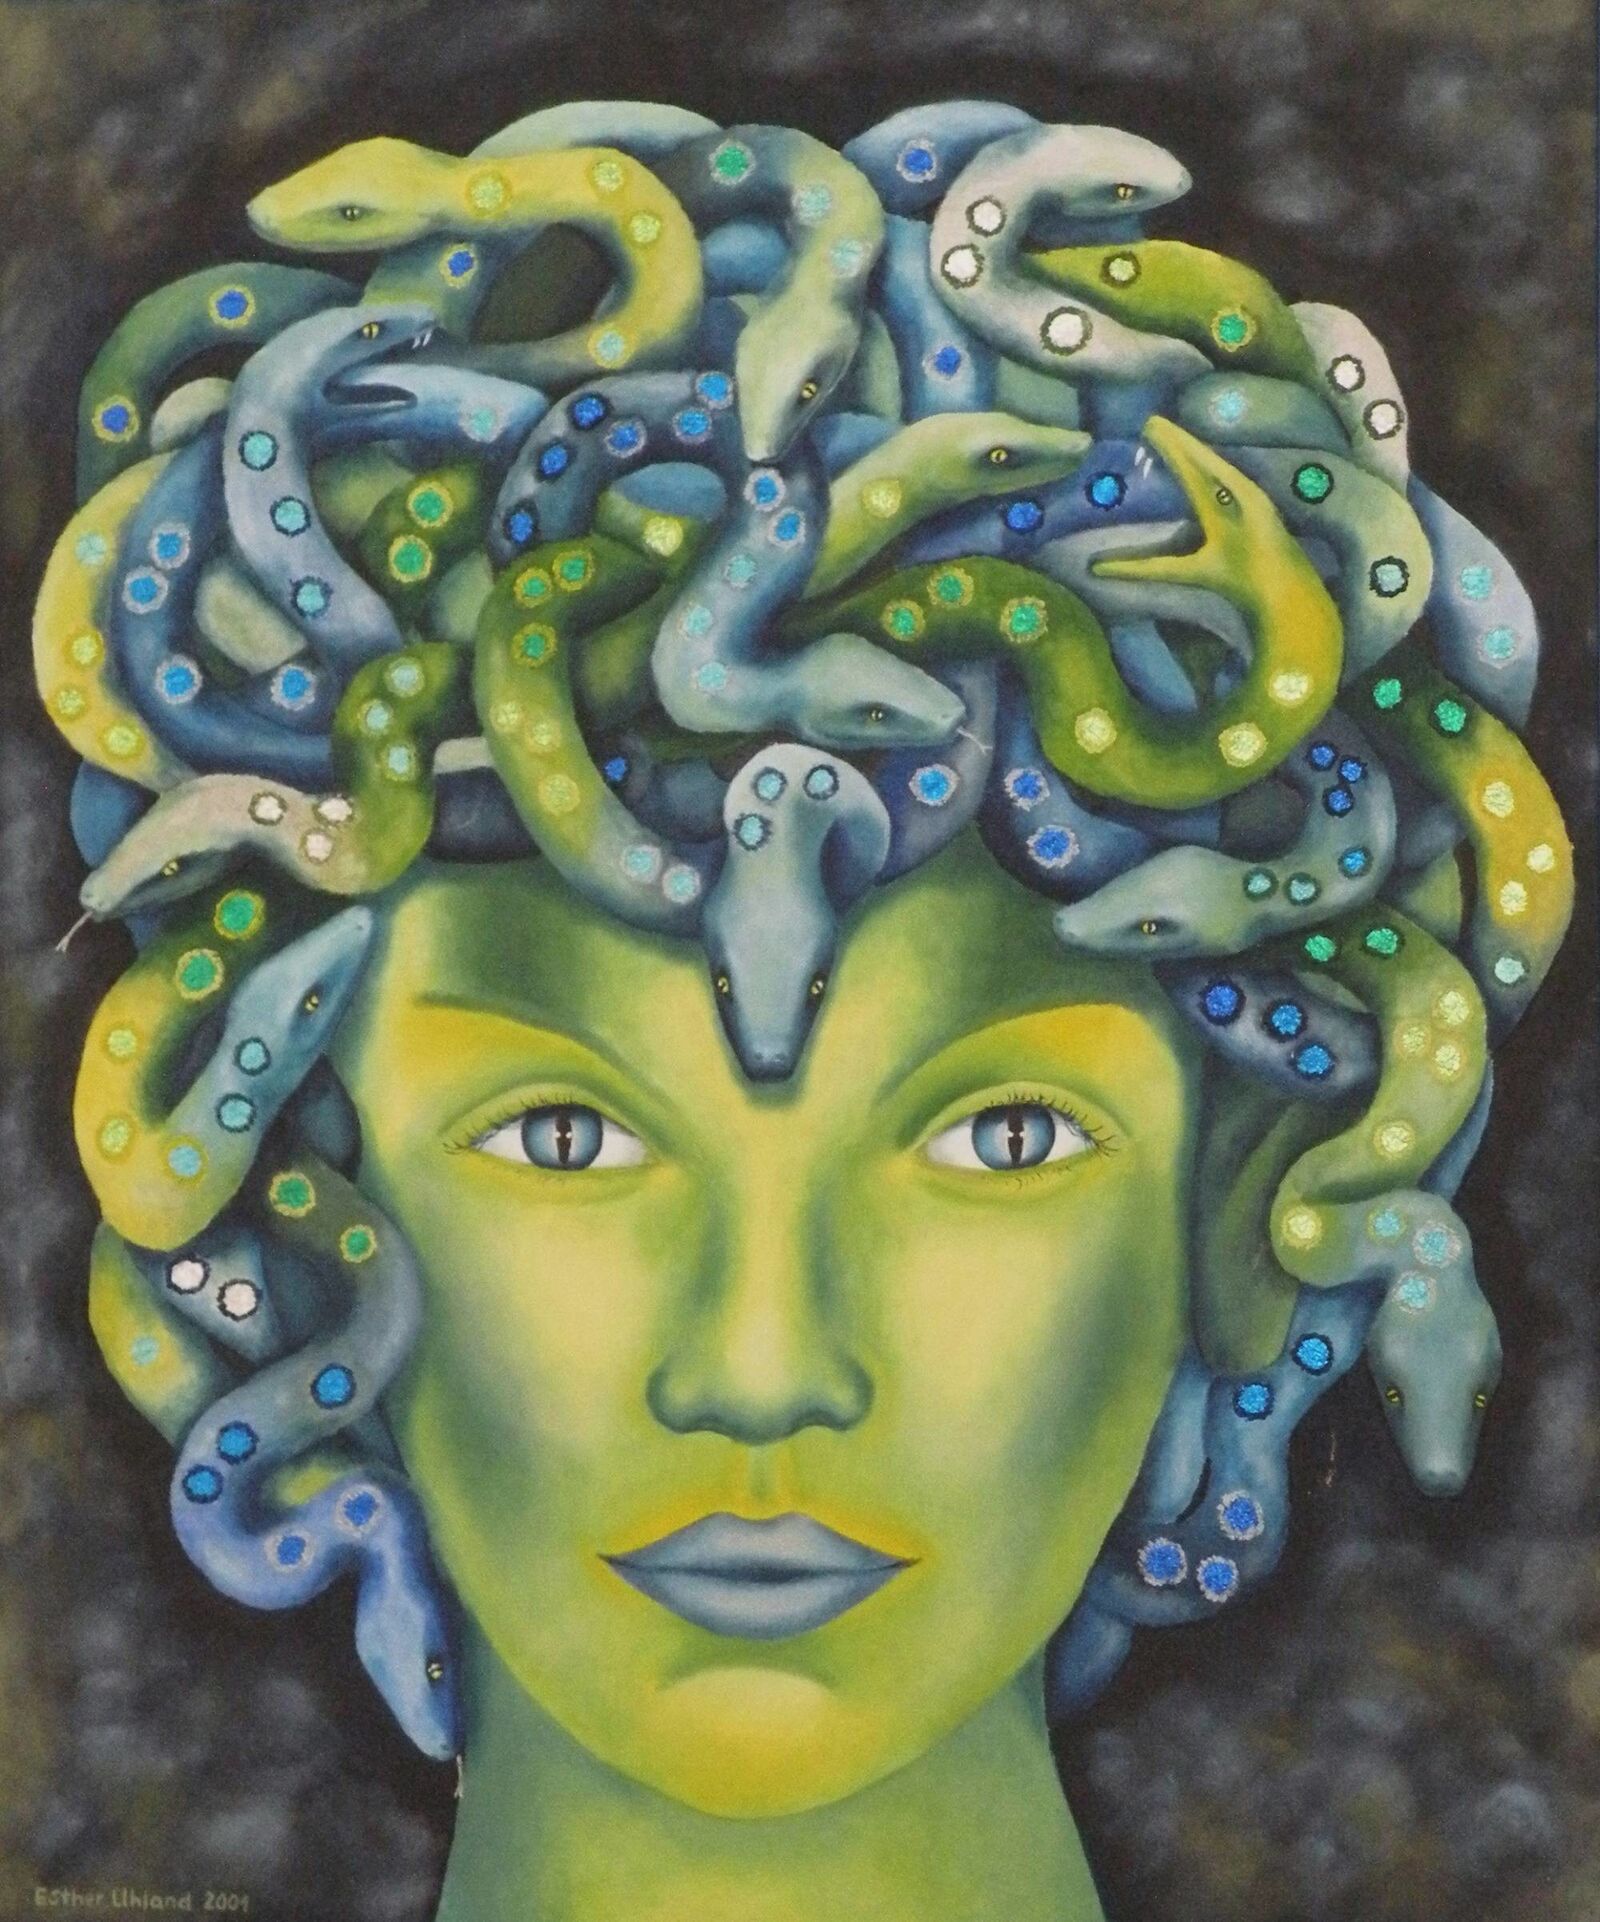 Medusa, 2001